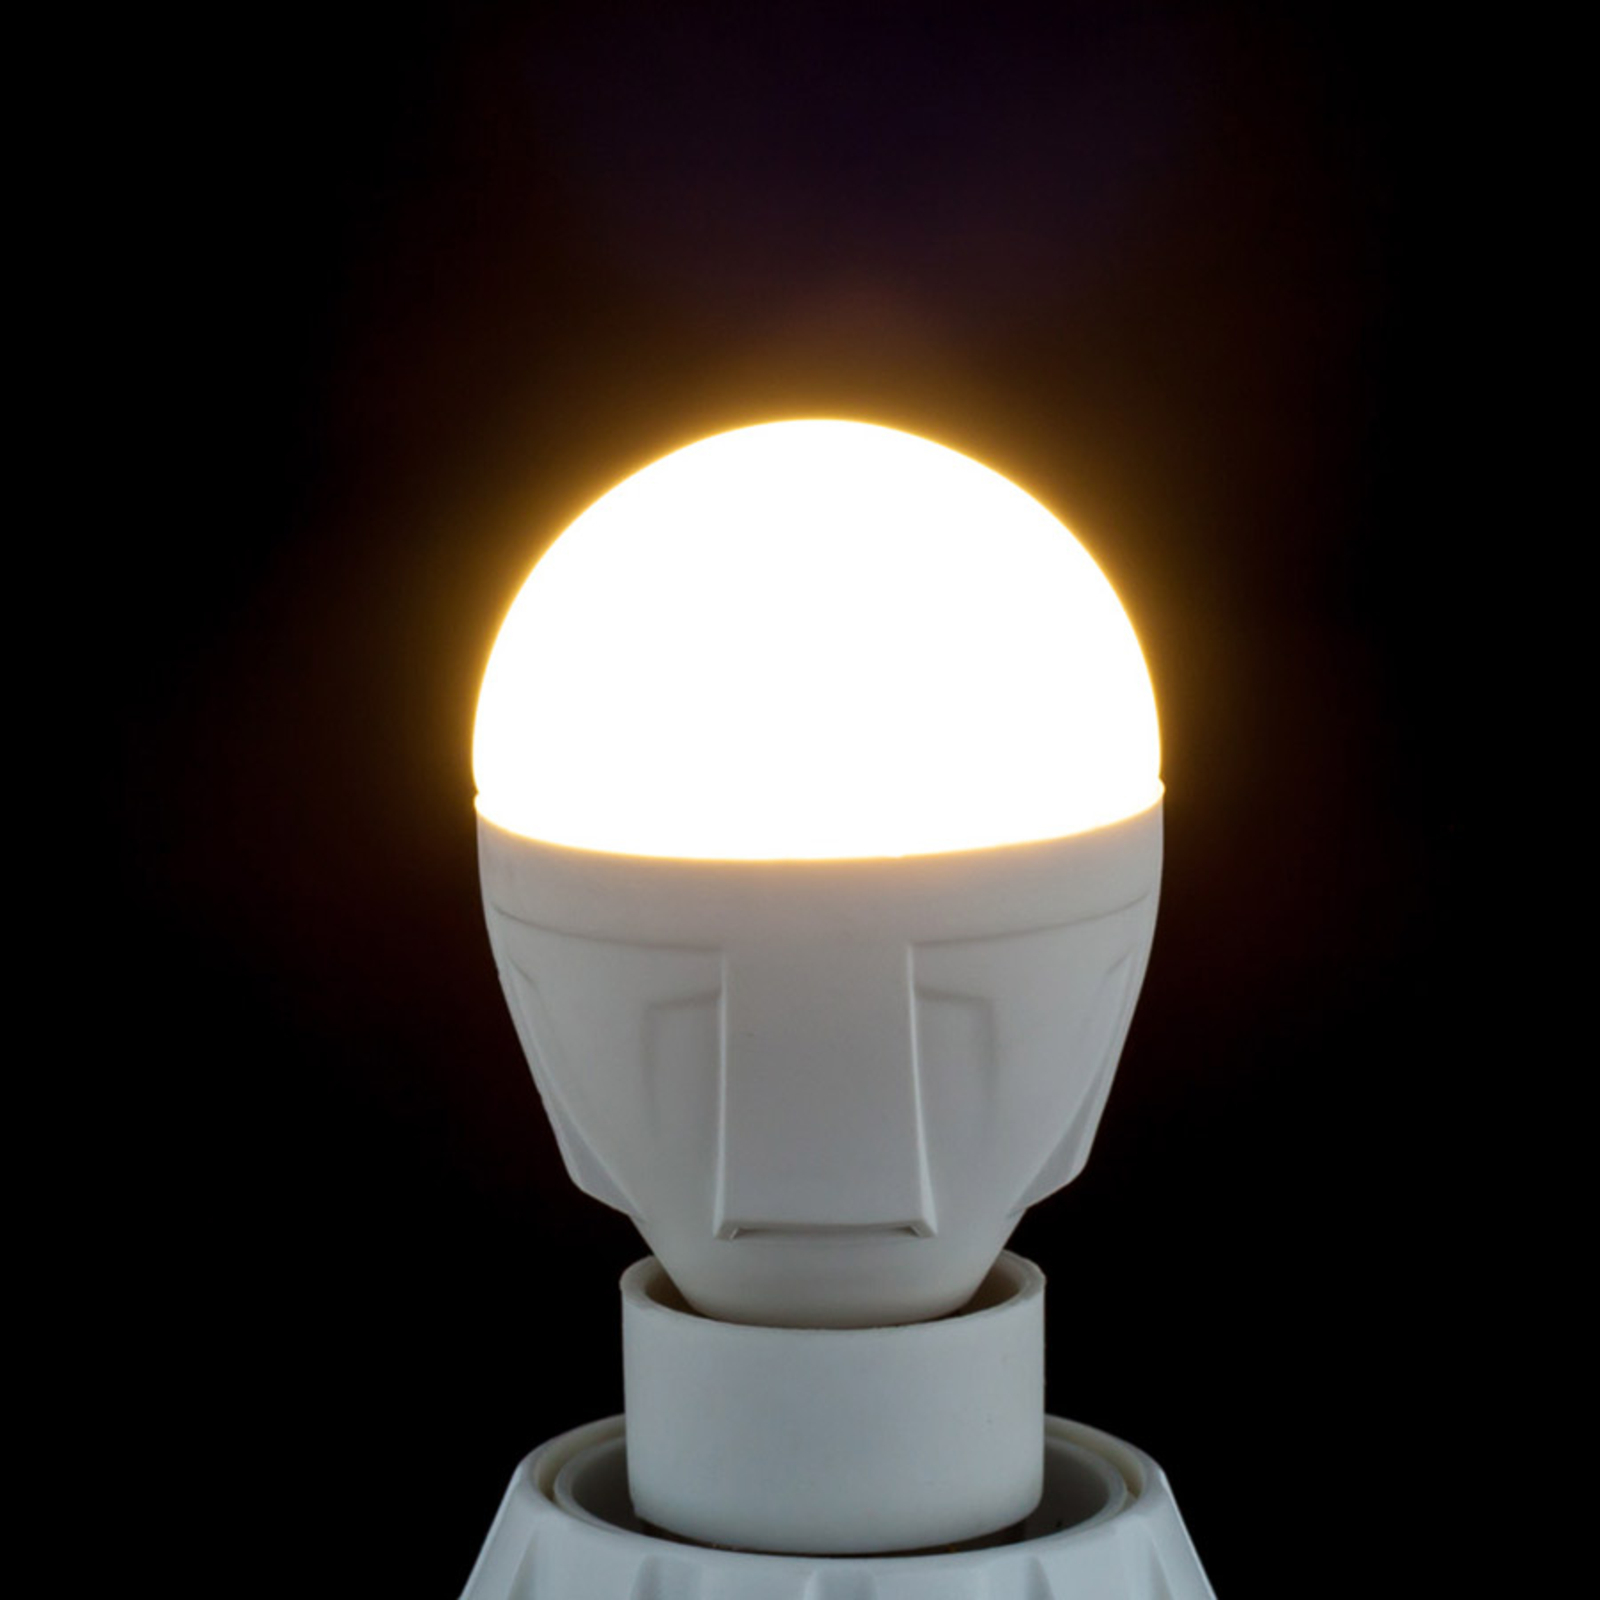 E14 4,9 W 830 ampoule LED forme goutte blanc chaud